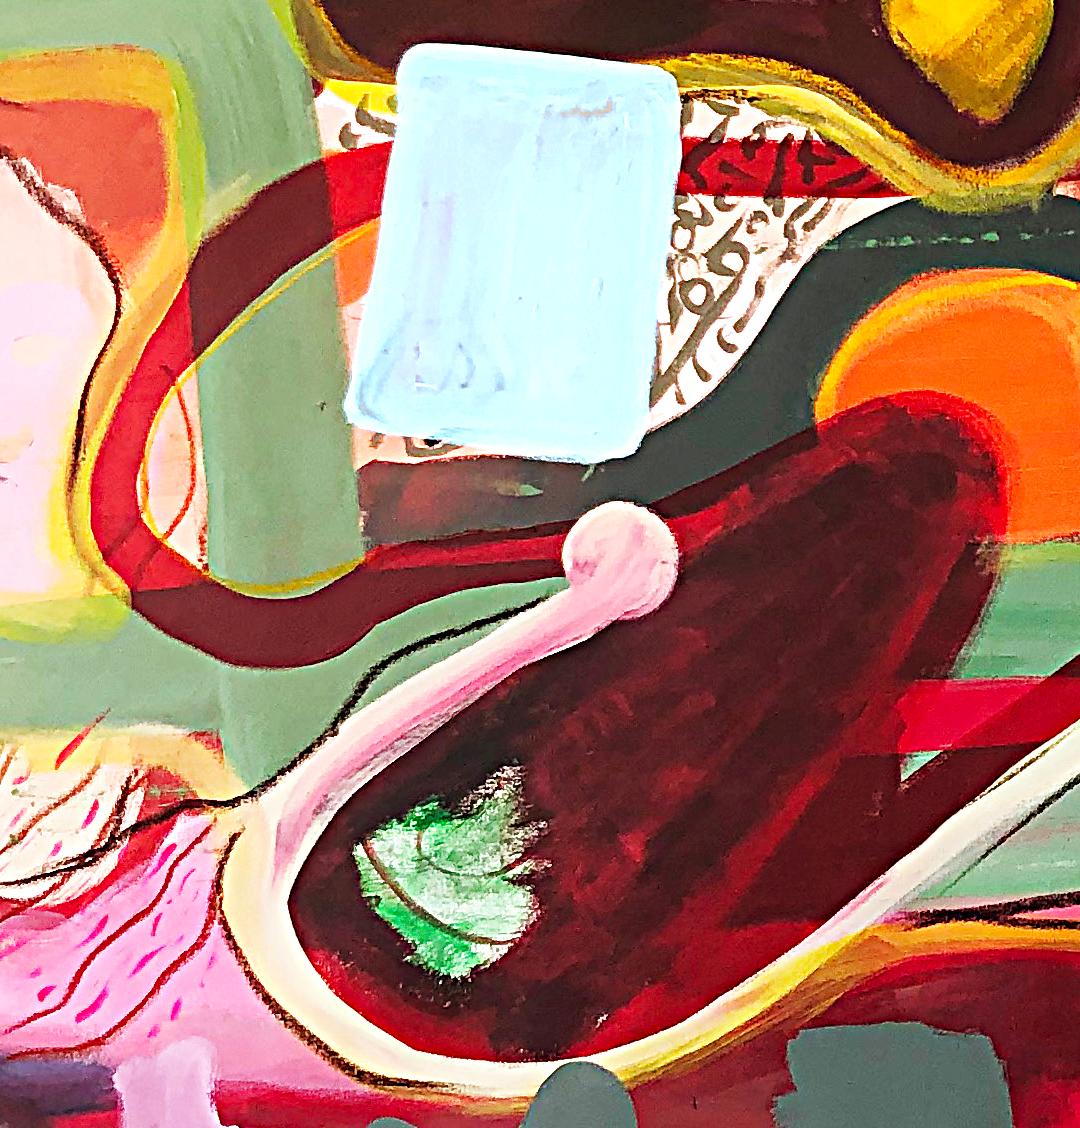 MAXA, 2024 par Alec Franco
Technique mixte acrylique et pastel à l'huile sur toile
Taille de l'image : 130 cm H x 215 cm L
Non encadré
Signé par le  artiste
_______
Les œuvres de l'artiste sont basées sur le temps et sur des principes esthétiques